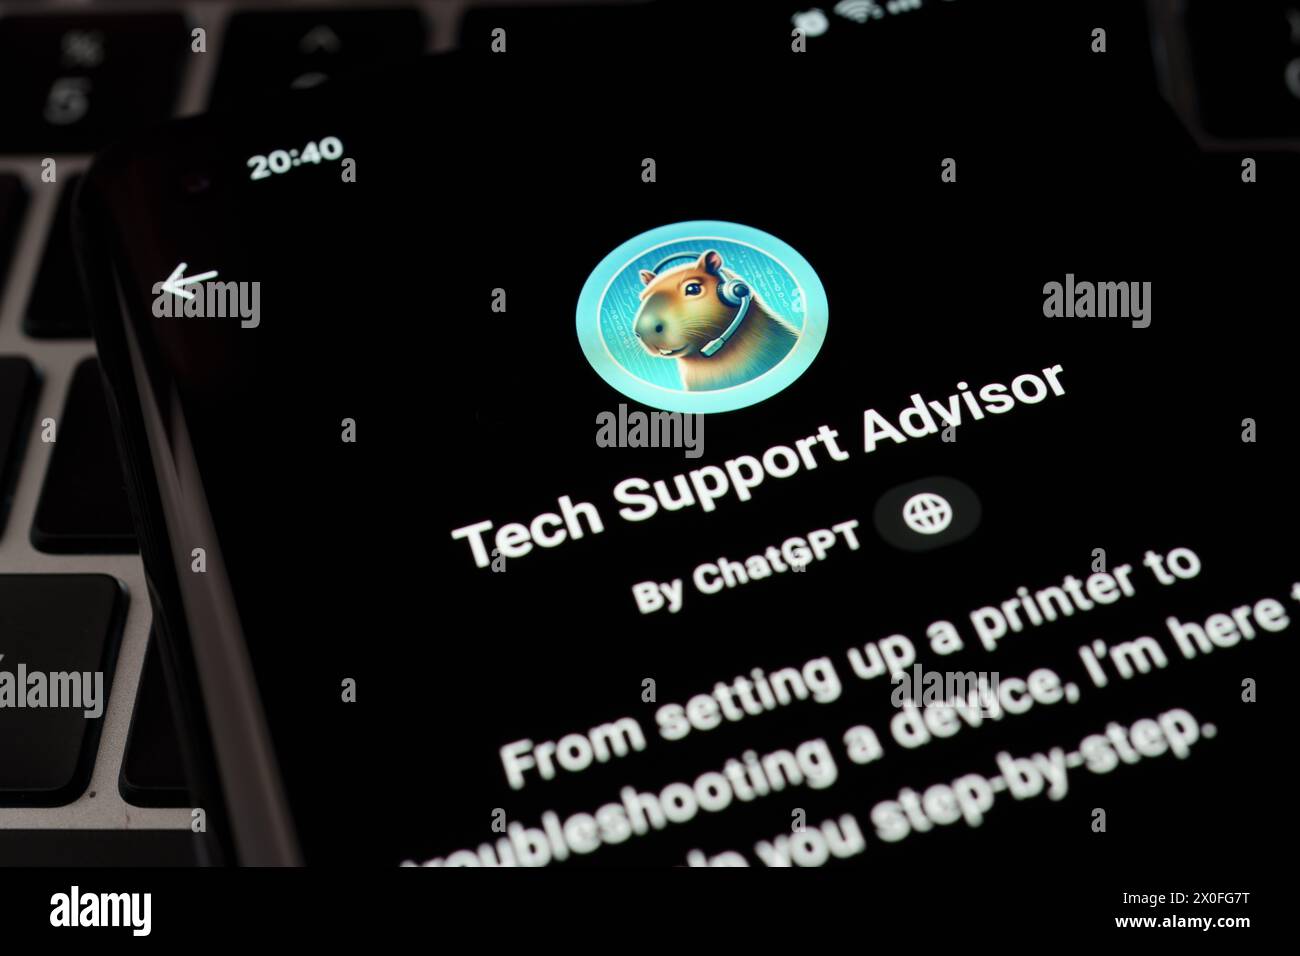 TECH SUPPORT ADVISOR personnalisé GPT vu dans GPT Store sur l'écran du smartphone placé sur le clavier de l'ordinateur portable. Stafford, Royaume-Uni, 8 avril 2024 Banque D'Images